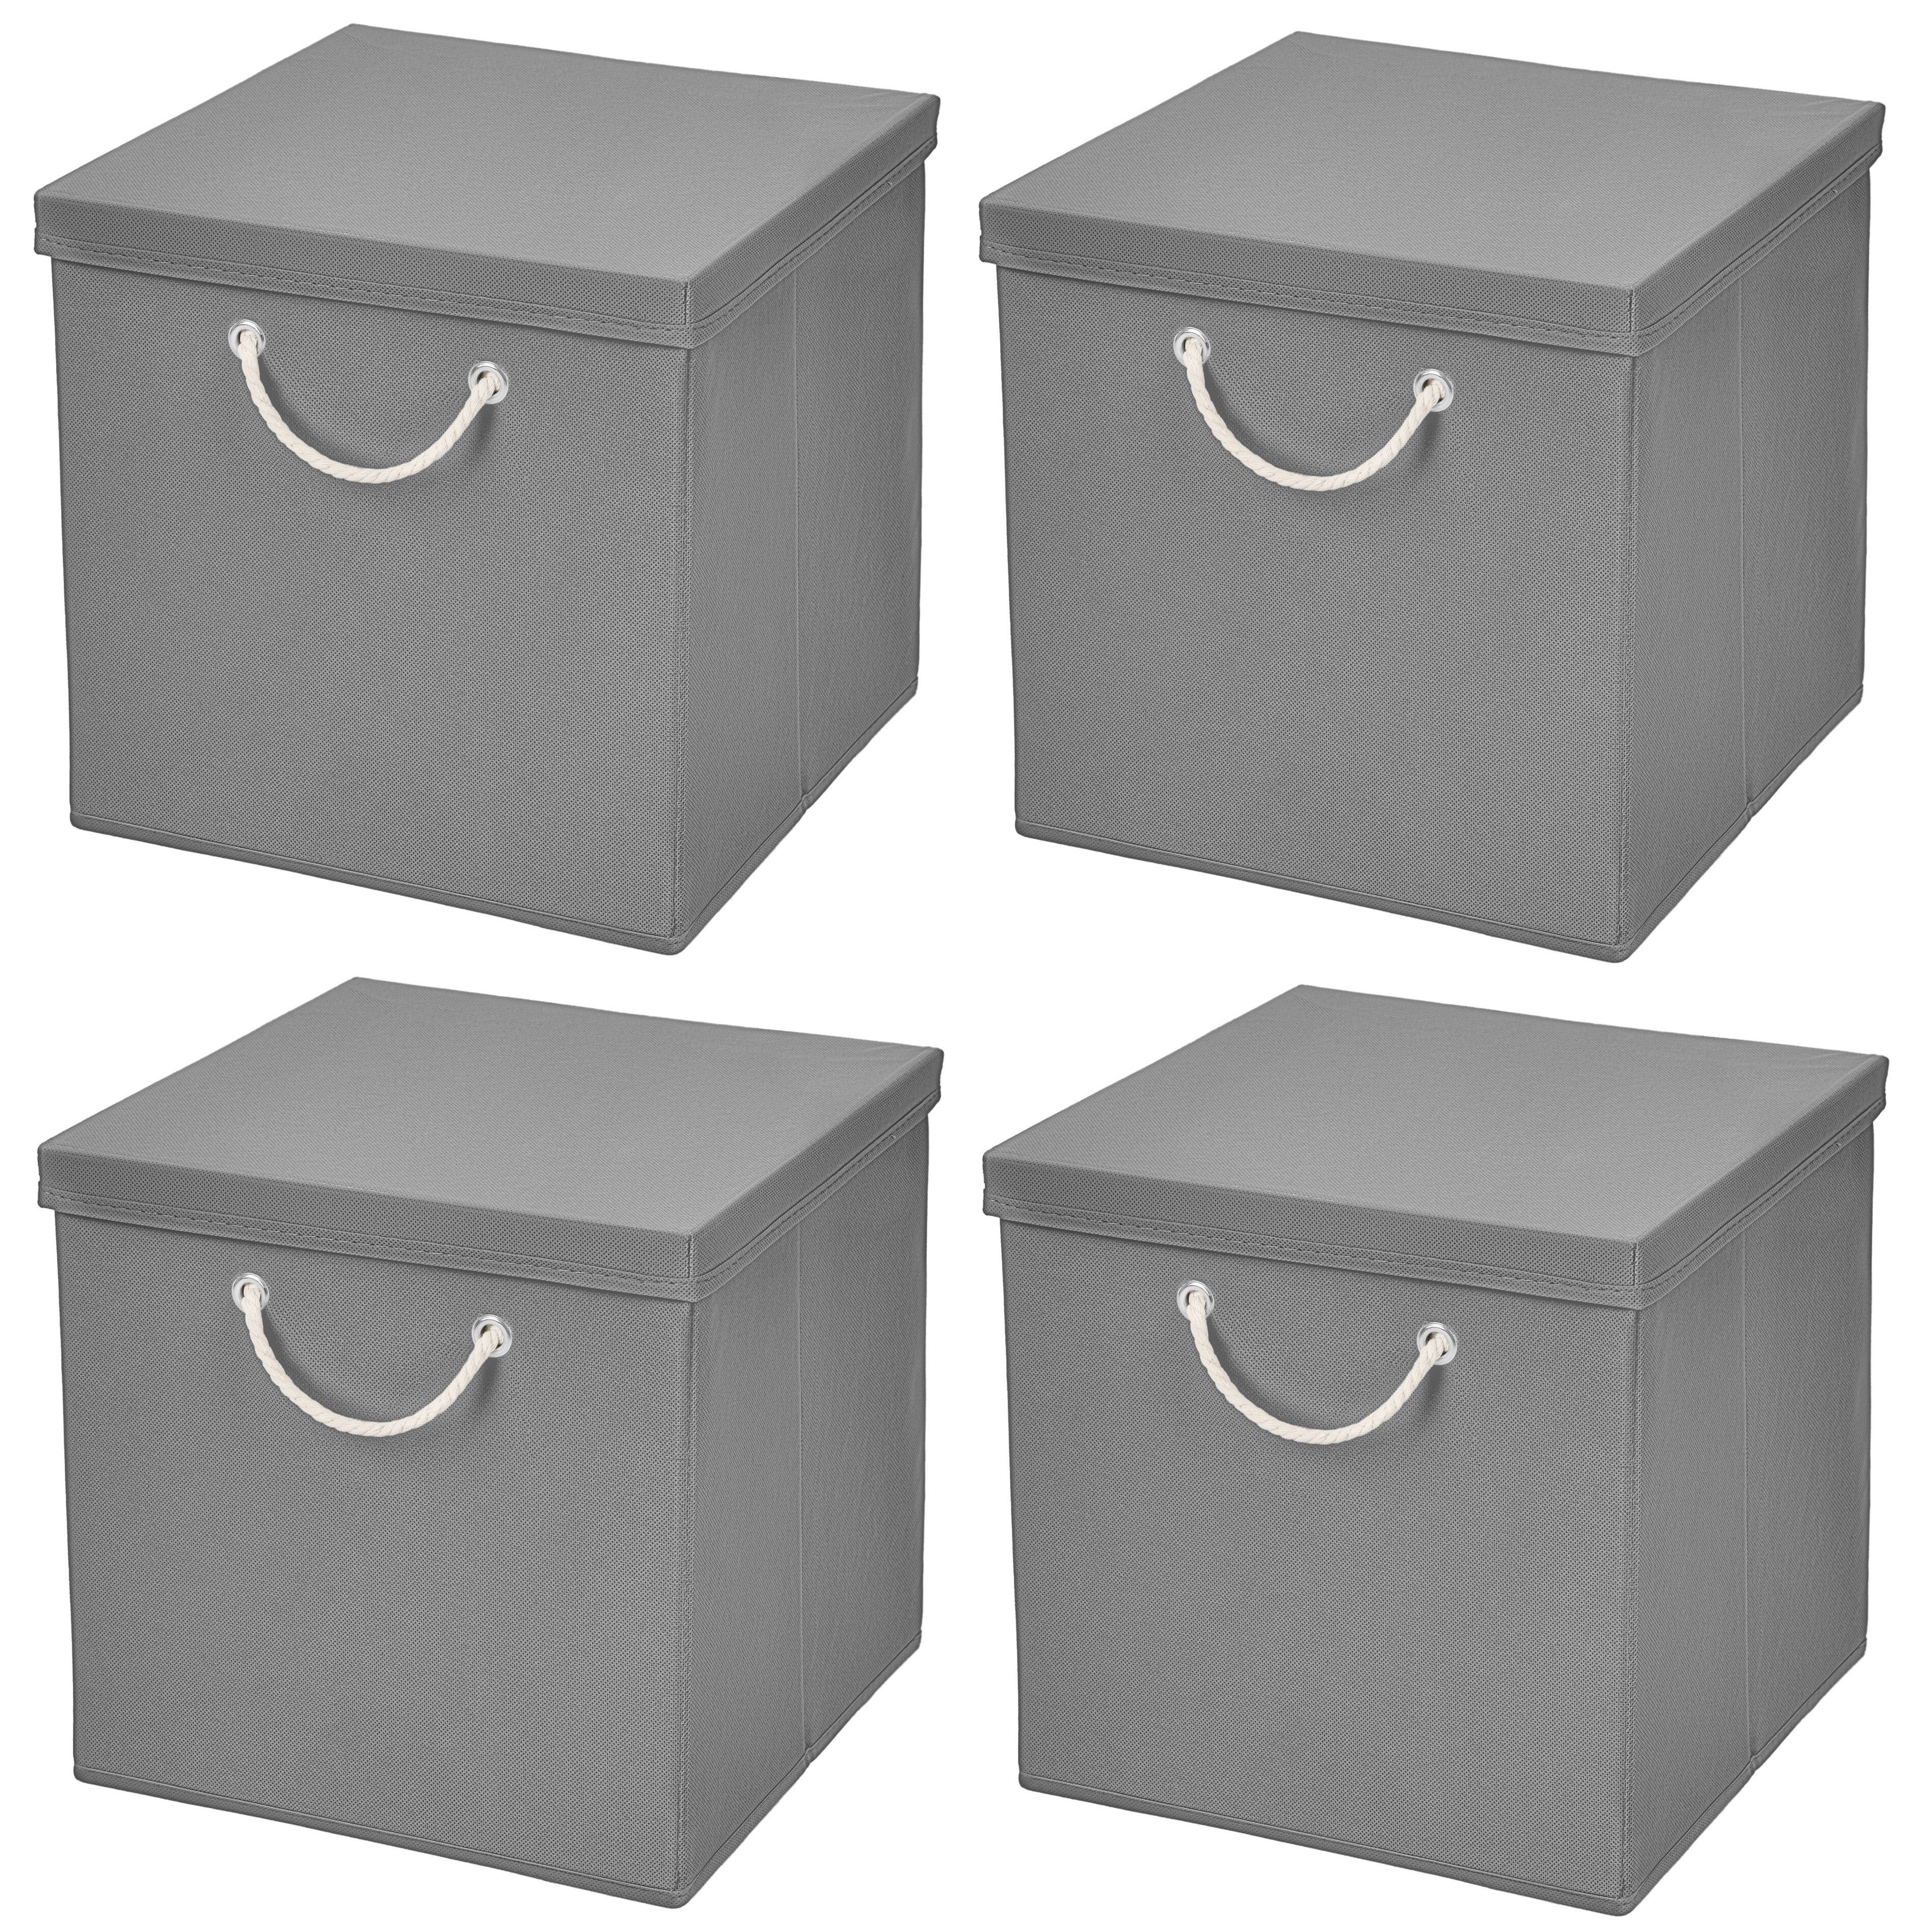 StickandShine Faltbox 4 Stück 30 x 30 x 30 cm Сховищаsbox Stoffboxen in verschiedenen Farben (4er SET 30x30x30) Faltbox moderne Faltkiste Maritim mit Kordel 30cm